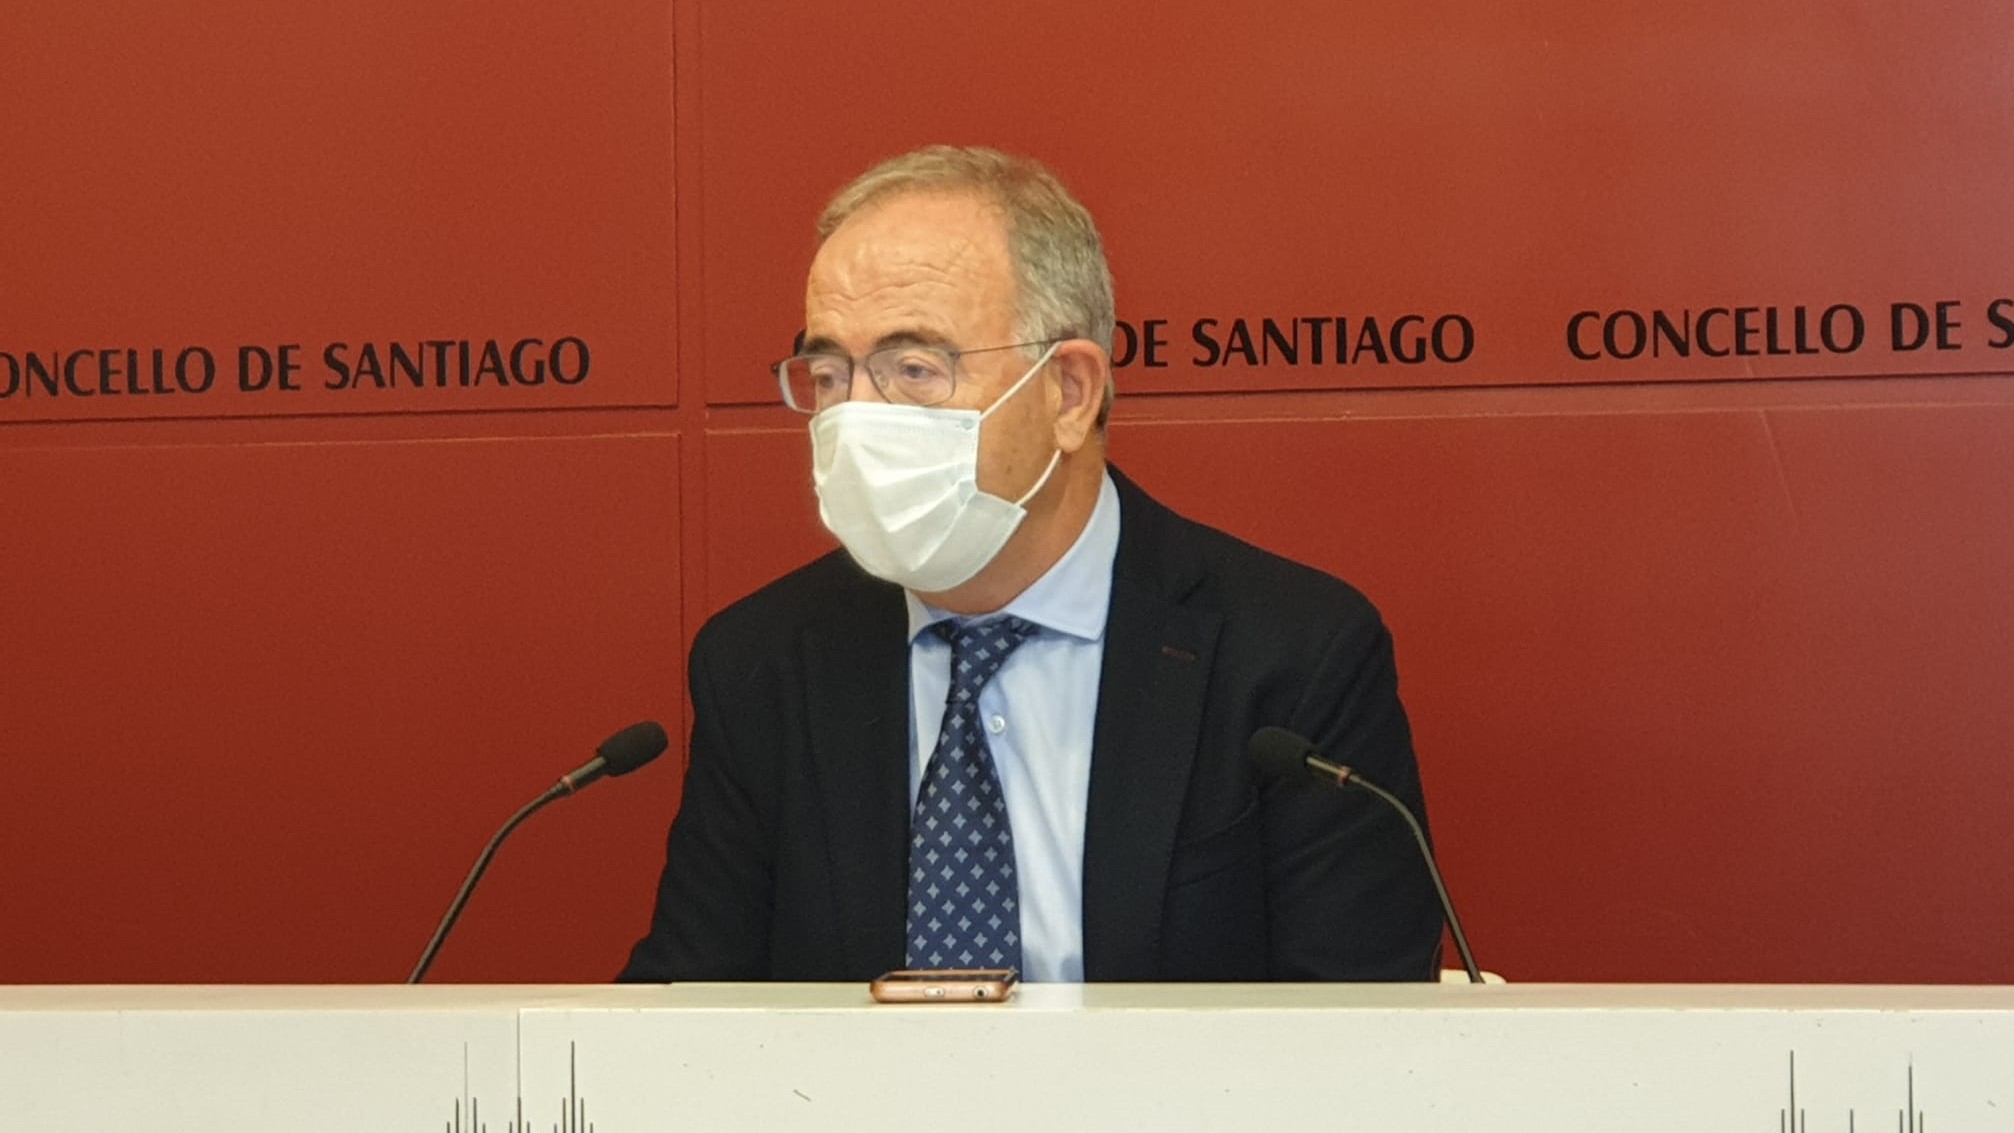 Xosé Sánchez Bugallo ofrece una rueda de prensa | CONCELLO DE SANTIAGO